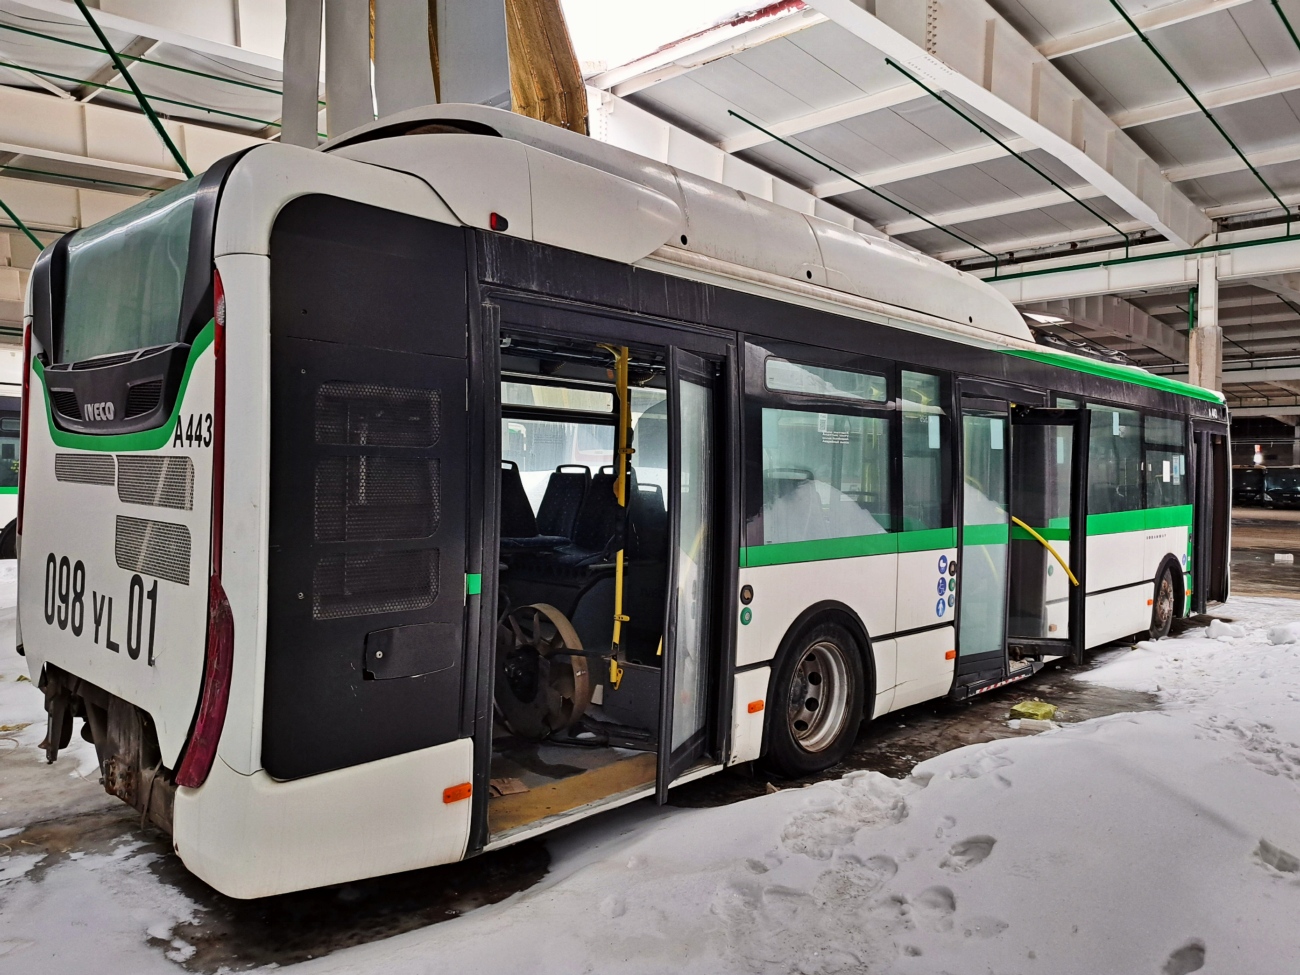 Asztana, IVECO Urbanway 12M Hybrid sz.: A443; Asztana — Bus depot